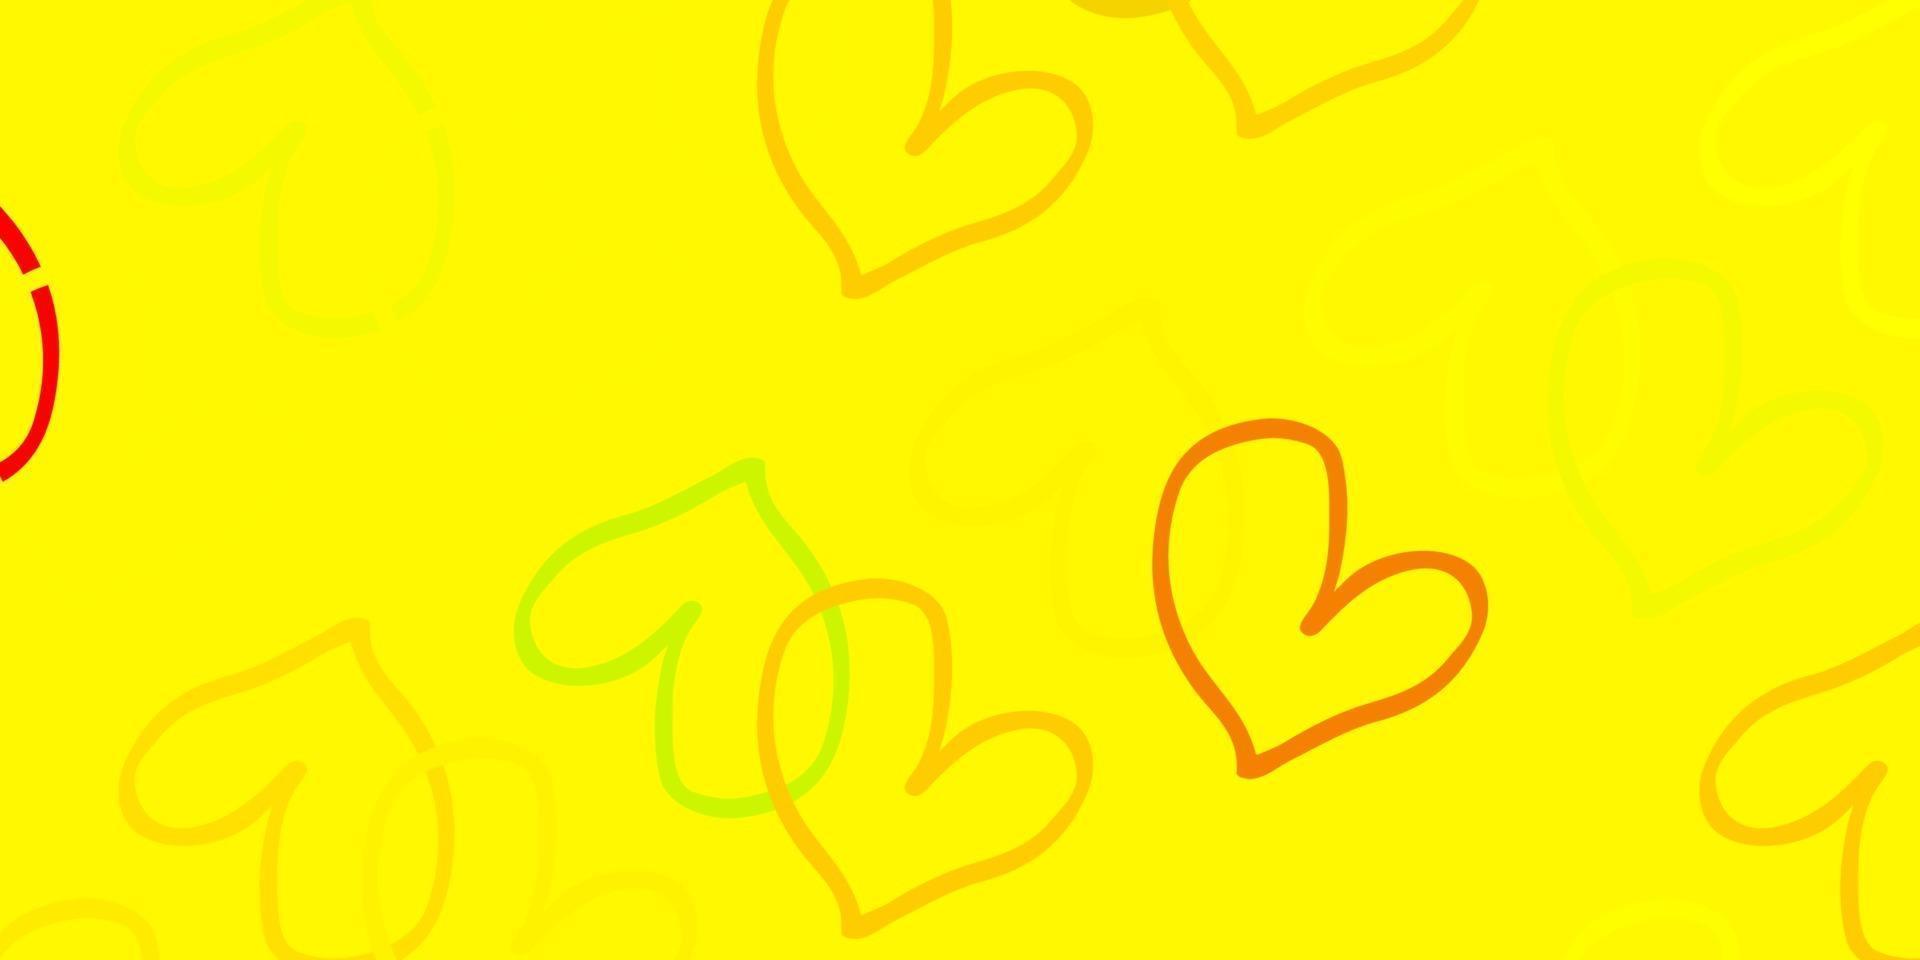 ljusröd, gul vektor bakgrund med söta hjärtan.